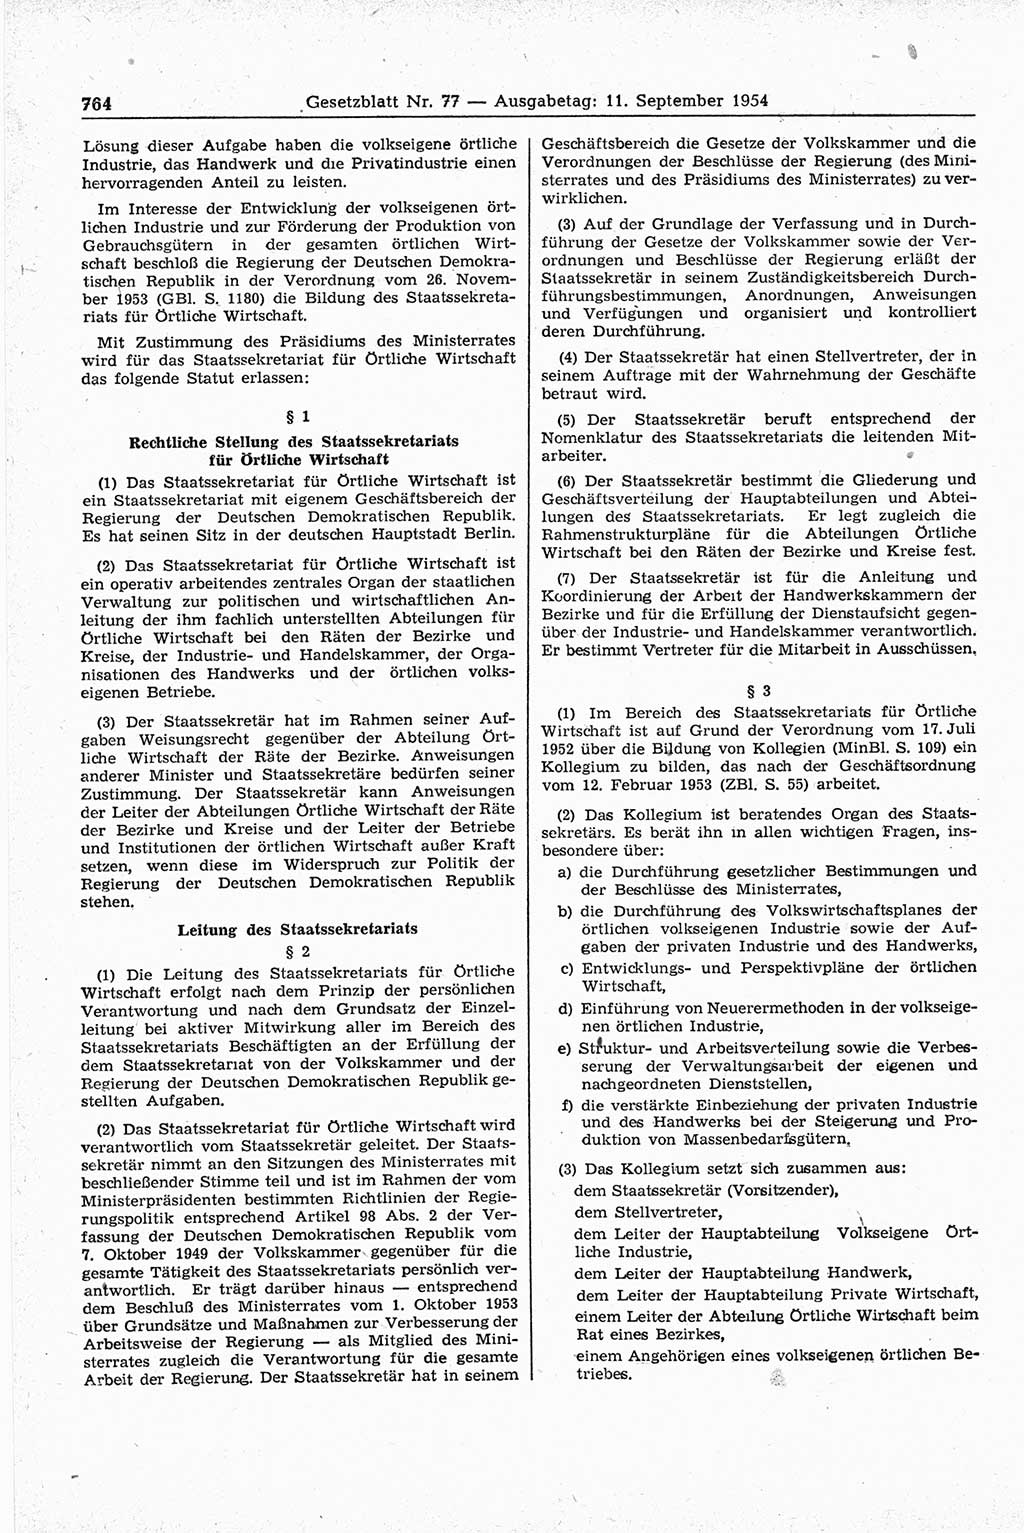 Gesetzblatt (GBl.) der Deutschen Demokratischen Republik (DDR) 1954, Seite 764 (GBl. DDR 1954, S. 764)